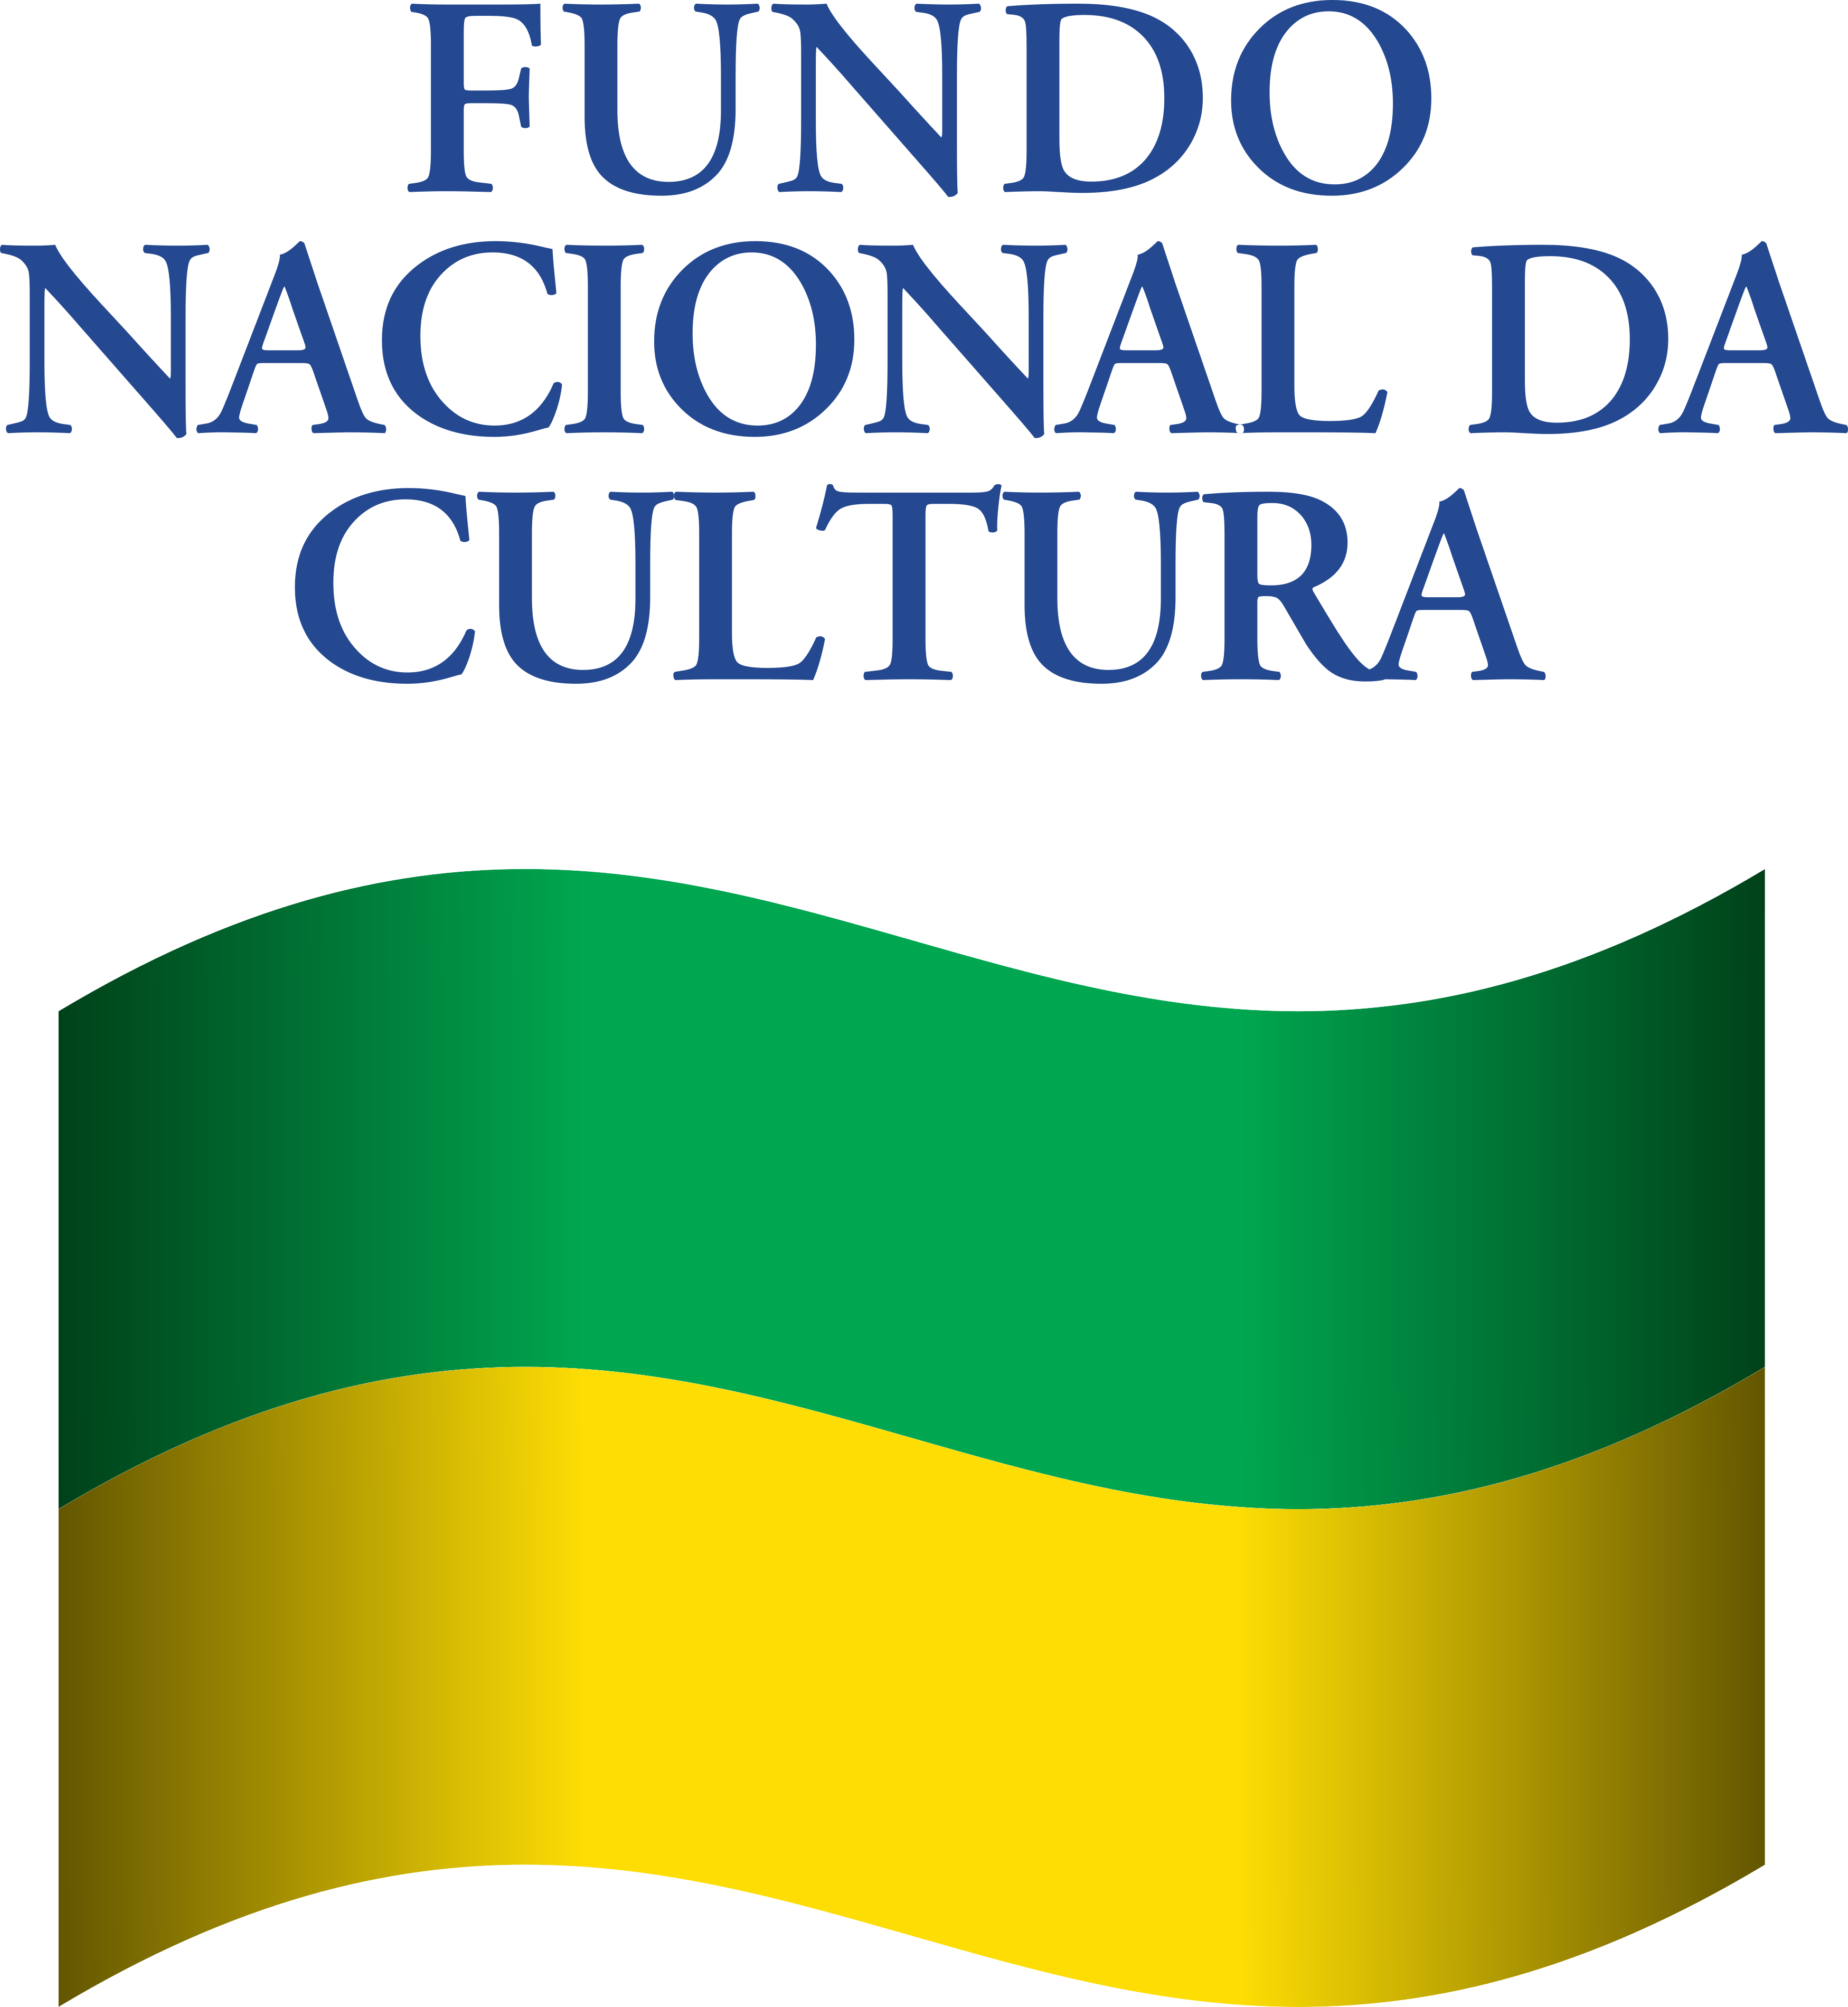 Fundo Nacional da Cultura logo.